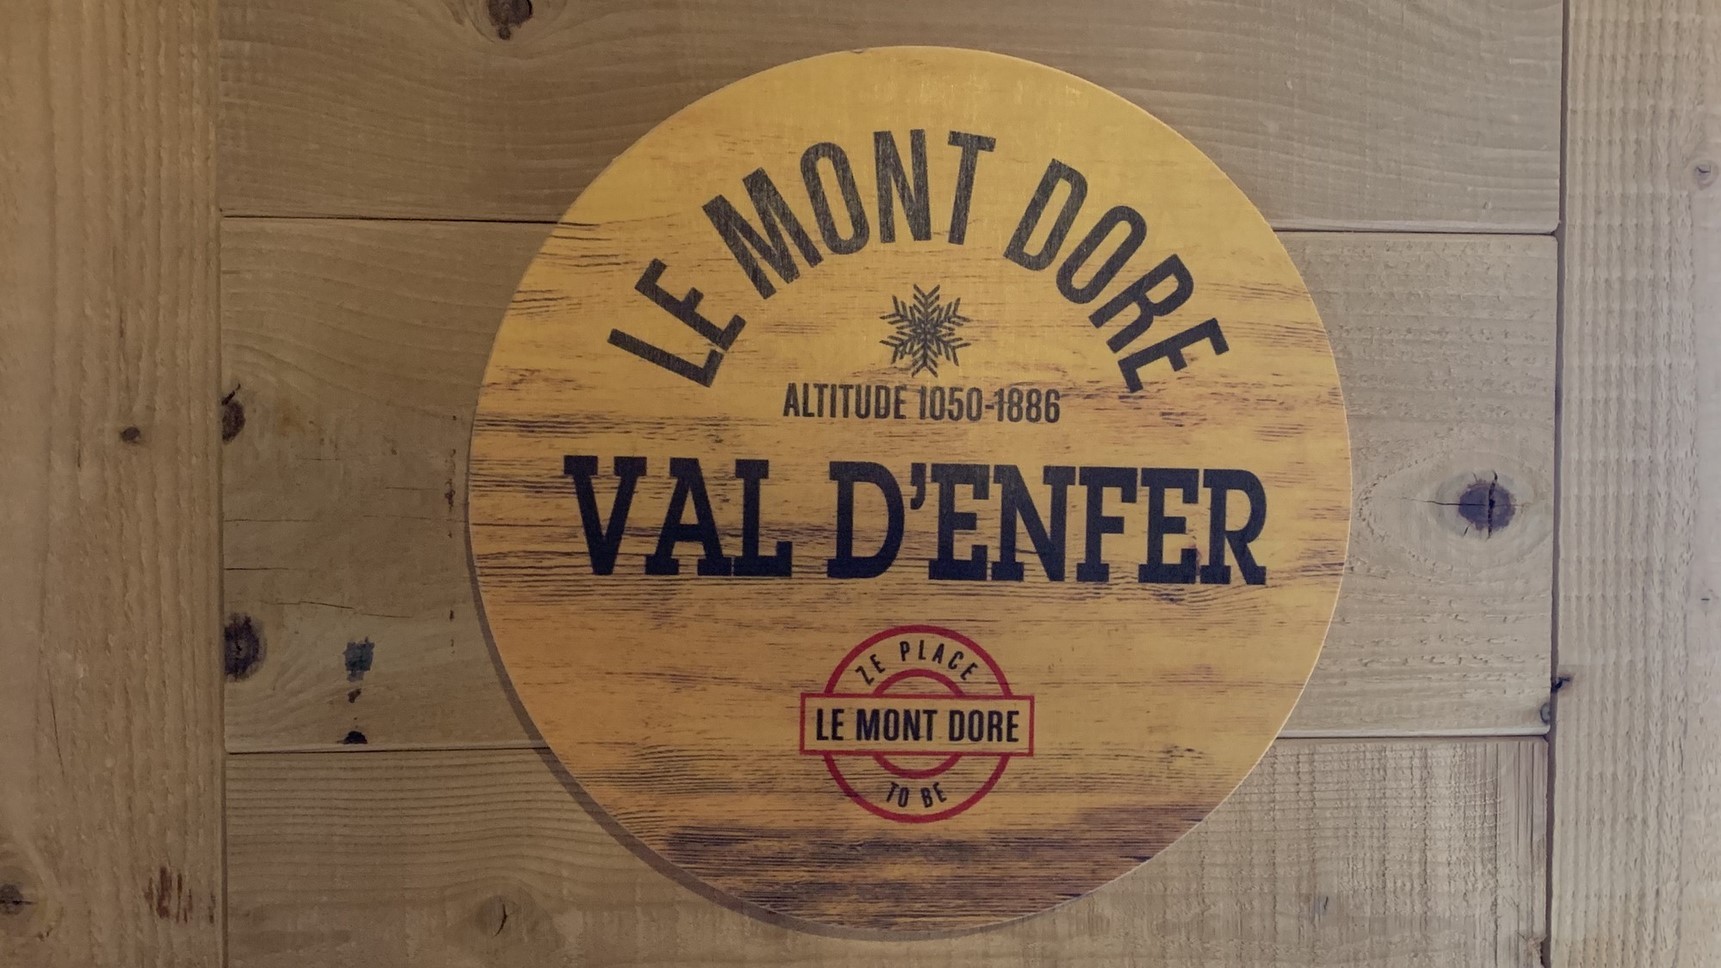 Super Besse chalet, Anorak chalet, Val d'Enfer room, the sign